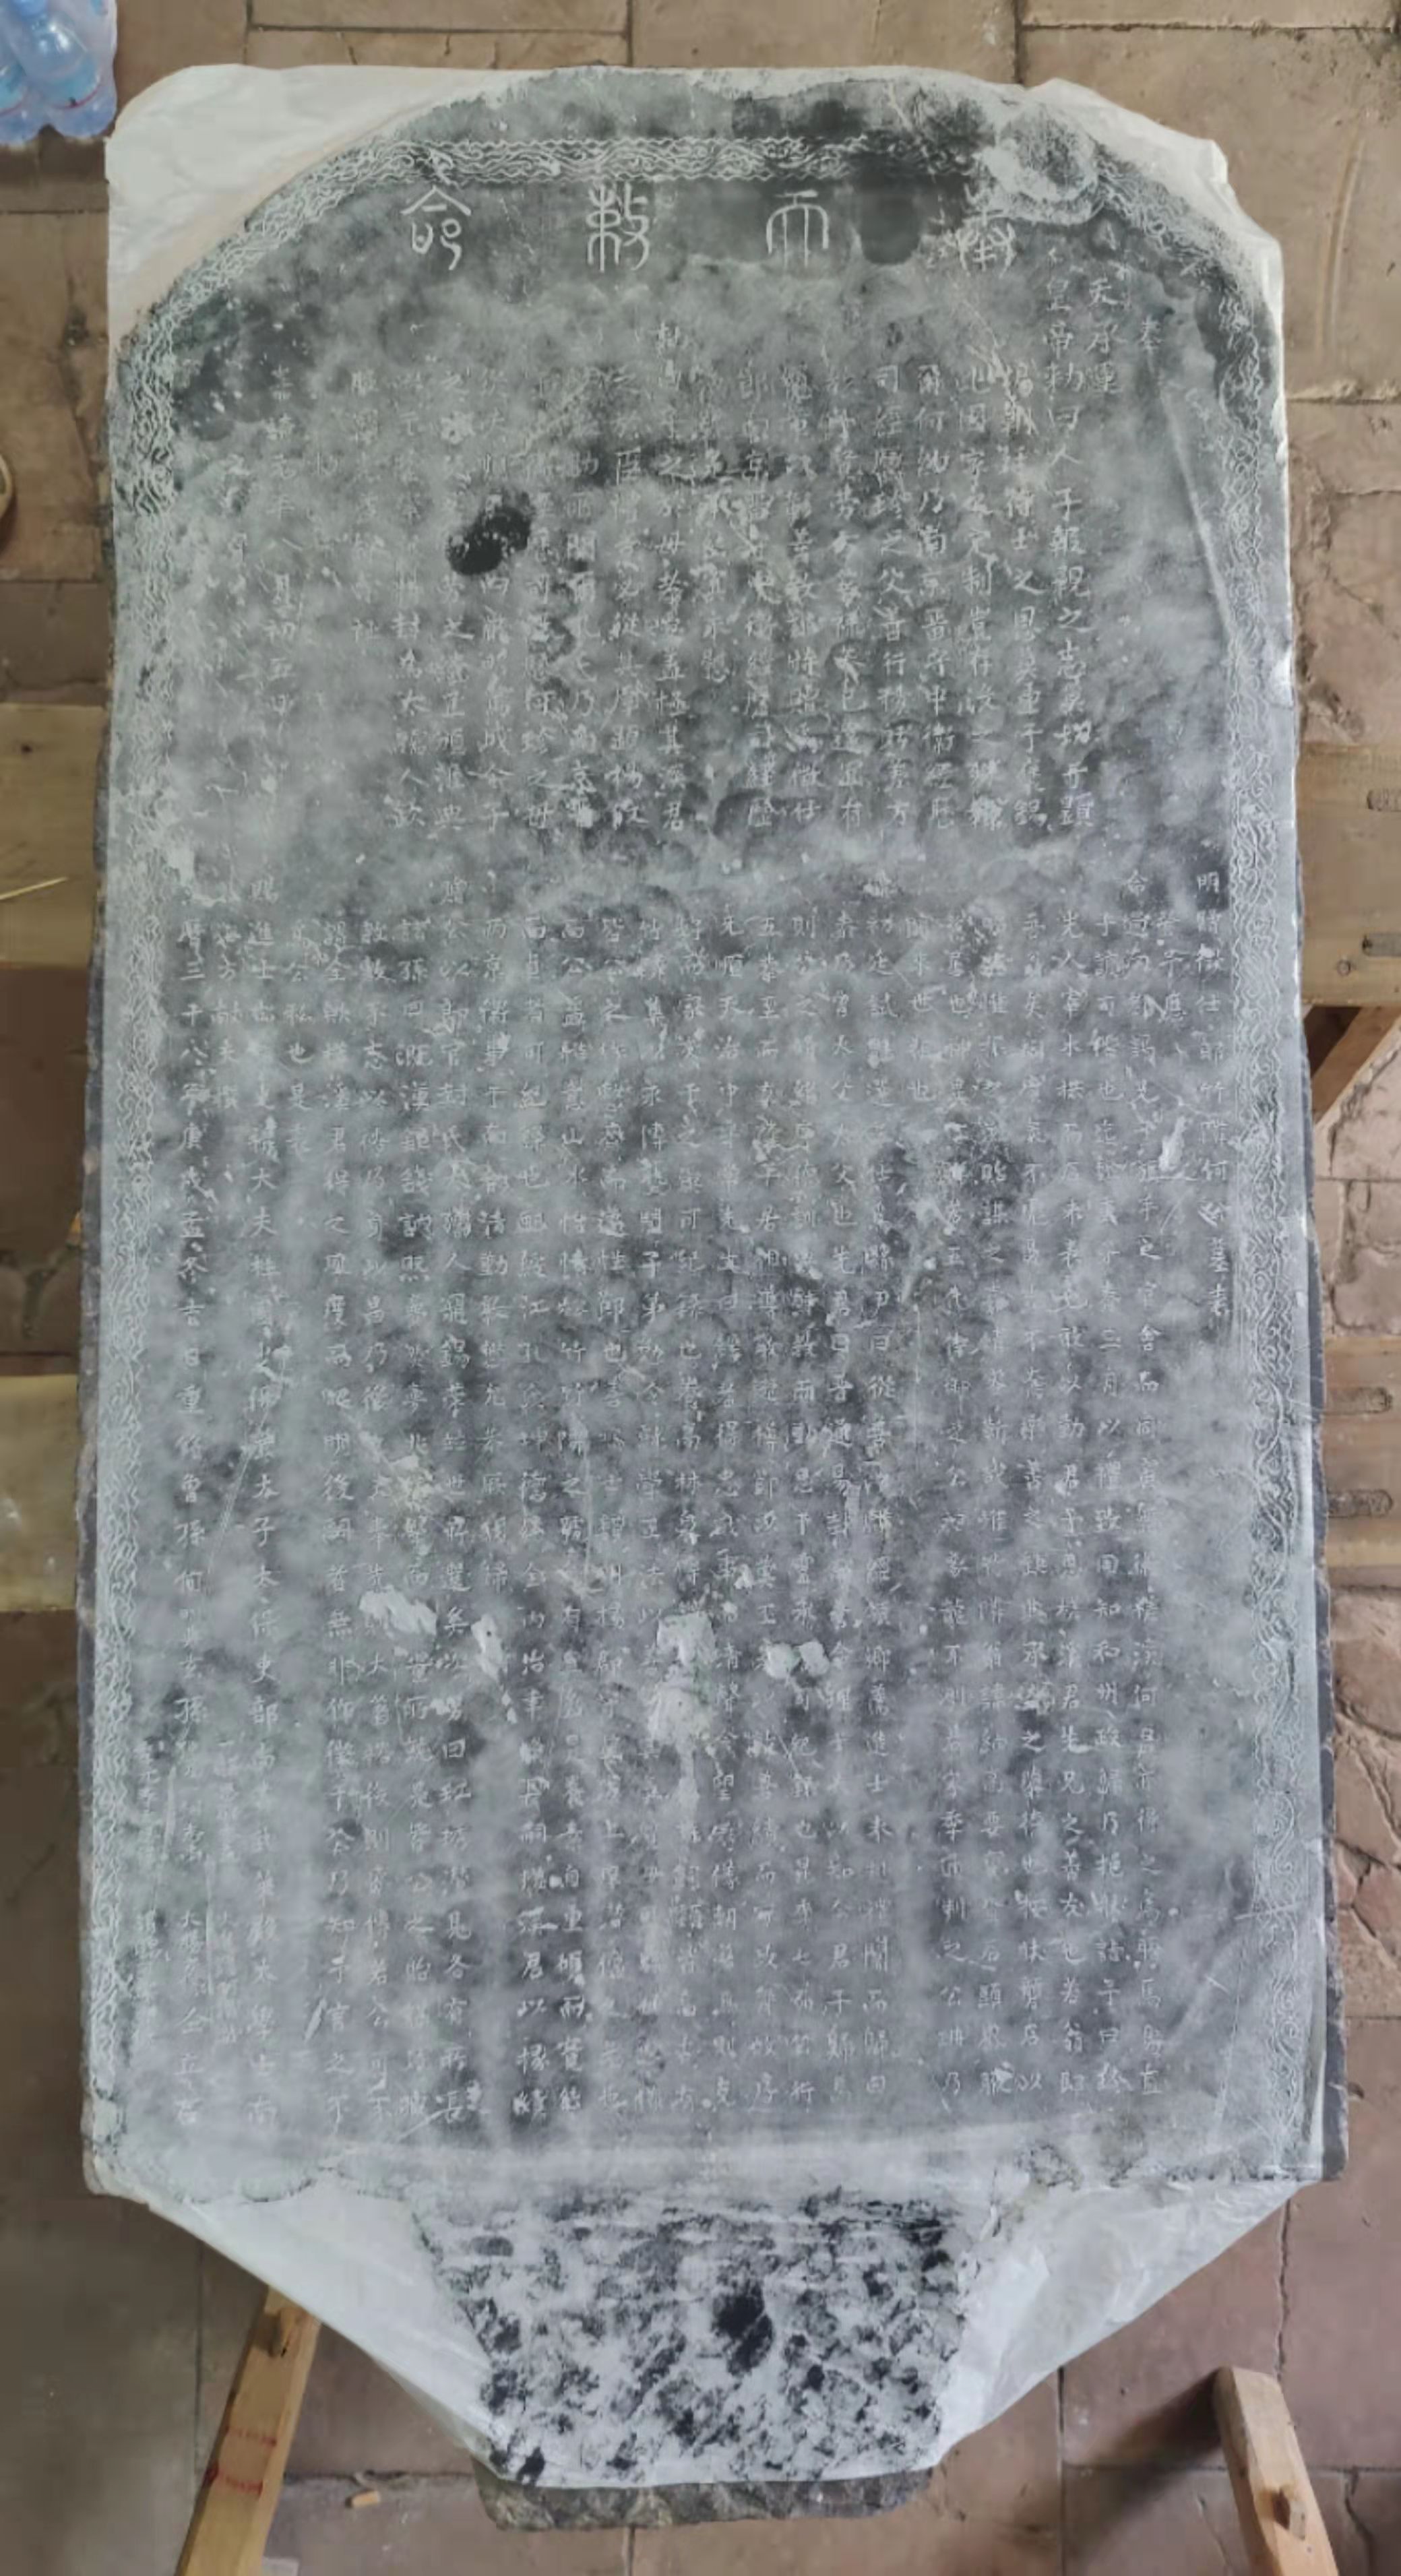 肇庆鼎湖发现一块明朝记述何氏族人的端砚石碑